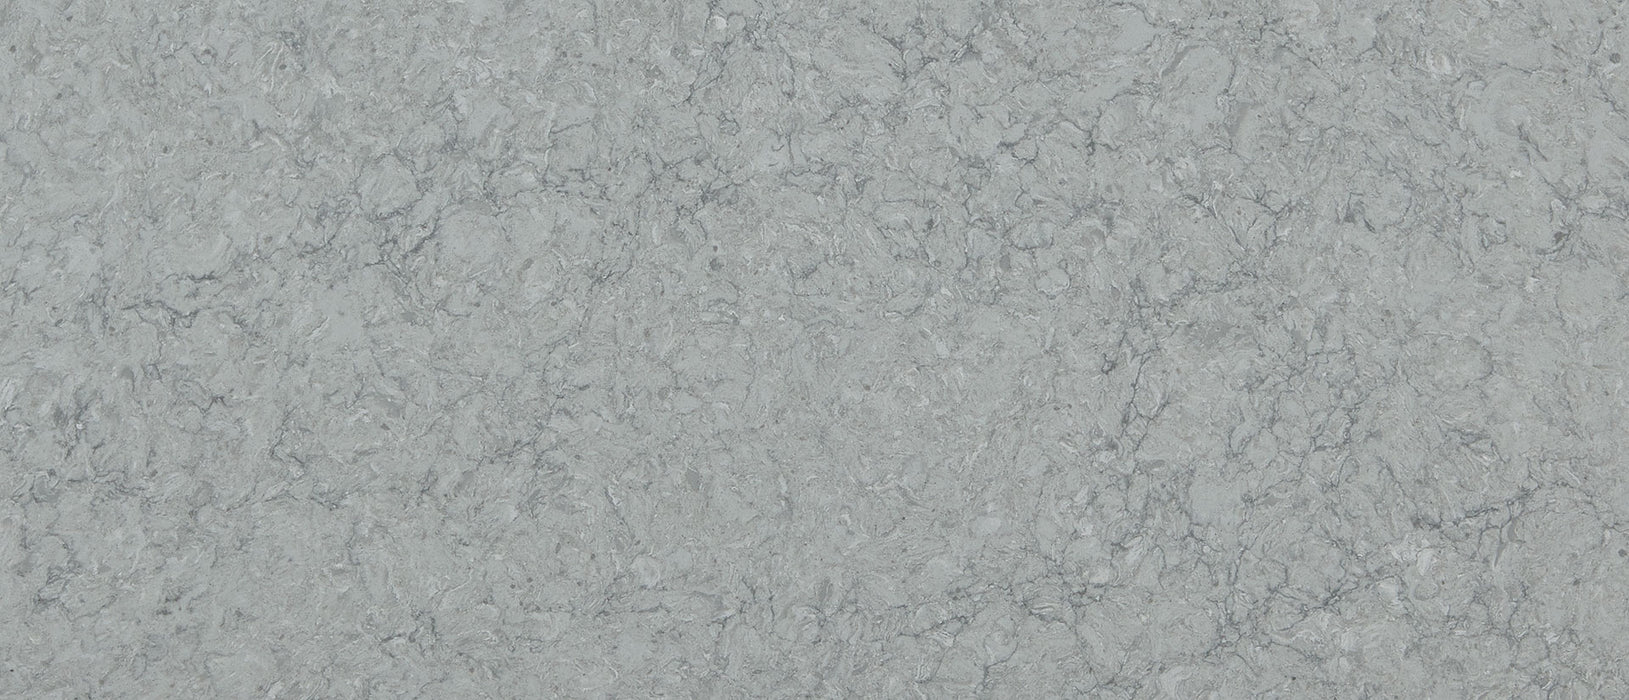 Galant gray quartz countertop close up